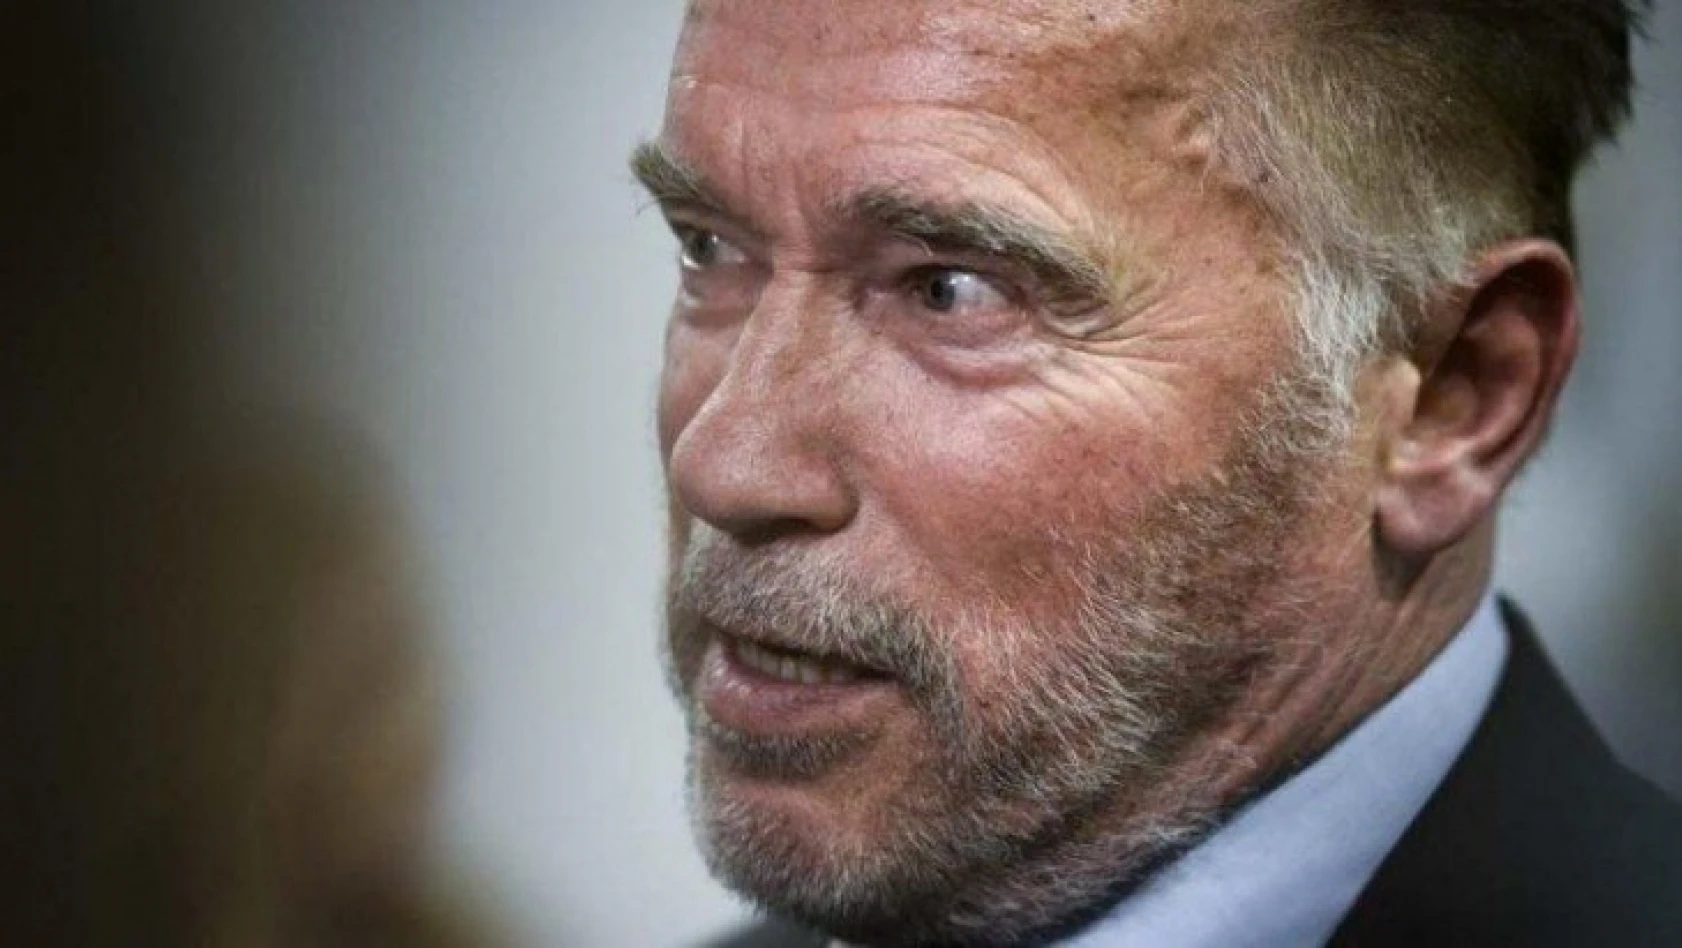 Arnold Schwarzenegger corona virüsü ile mücadeleye 1 milyon dolar bağışladı